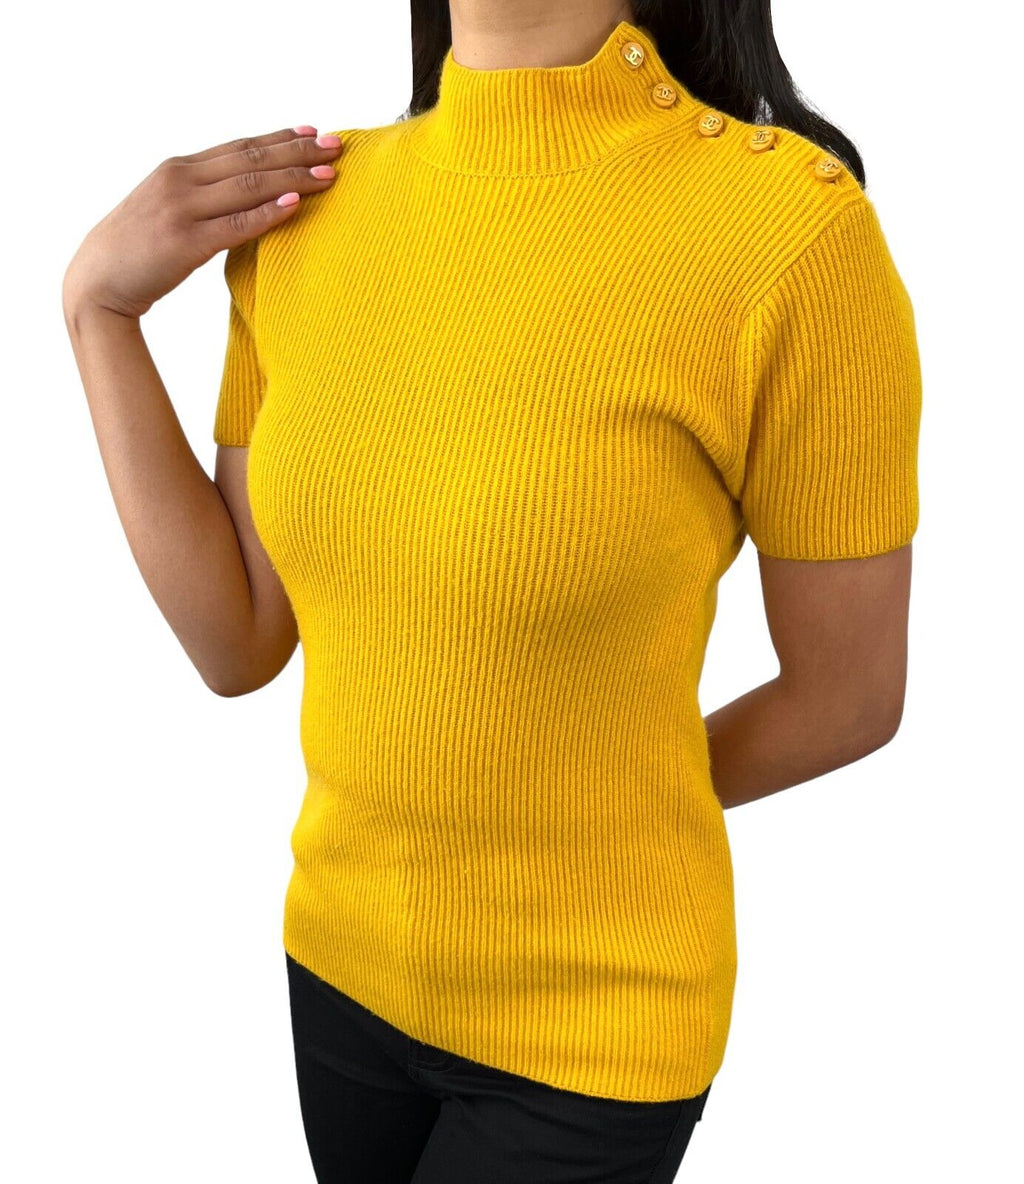 CHANEL Sweatshirts & Hoodies for Women - Poshmark